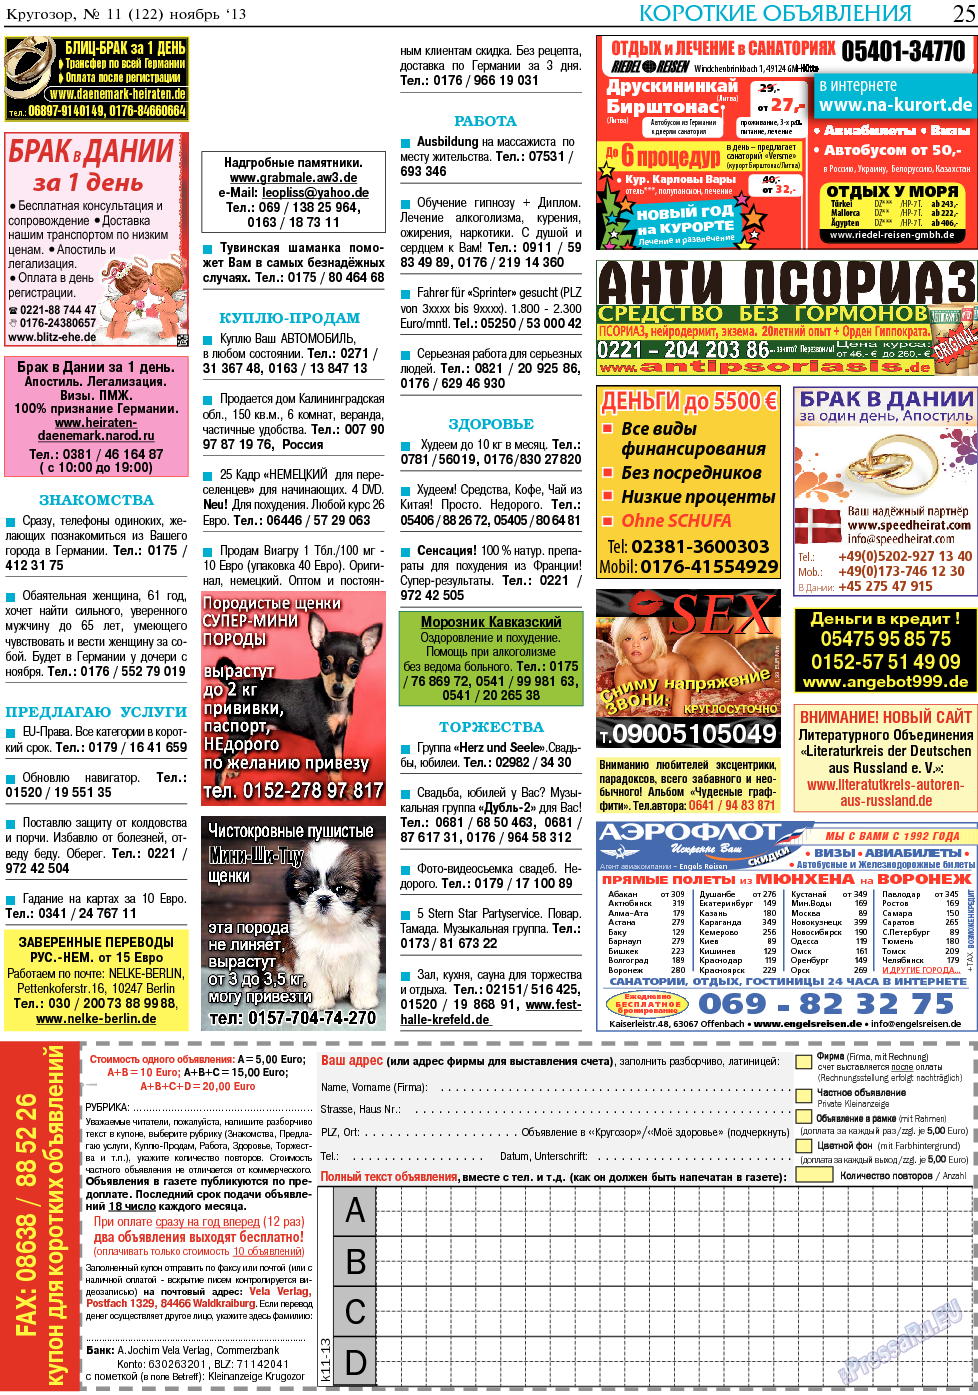 Кругозор, газета. 2013 №11 стр.25